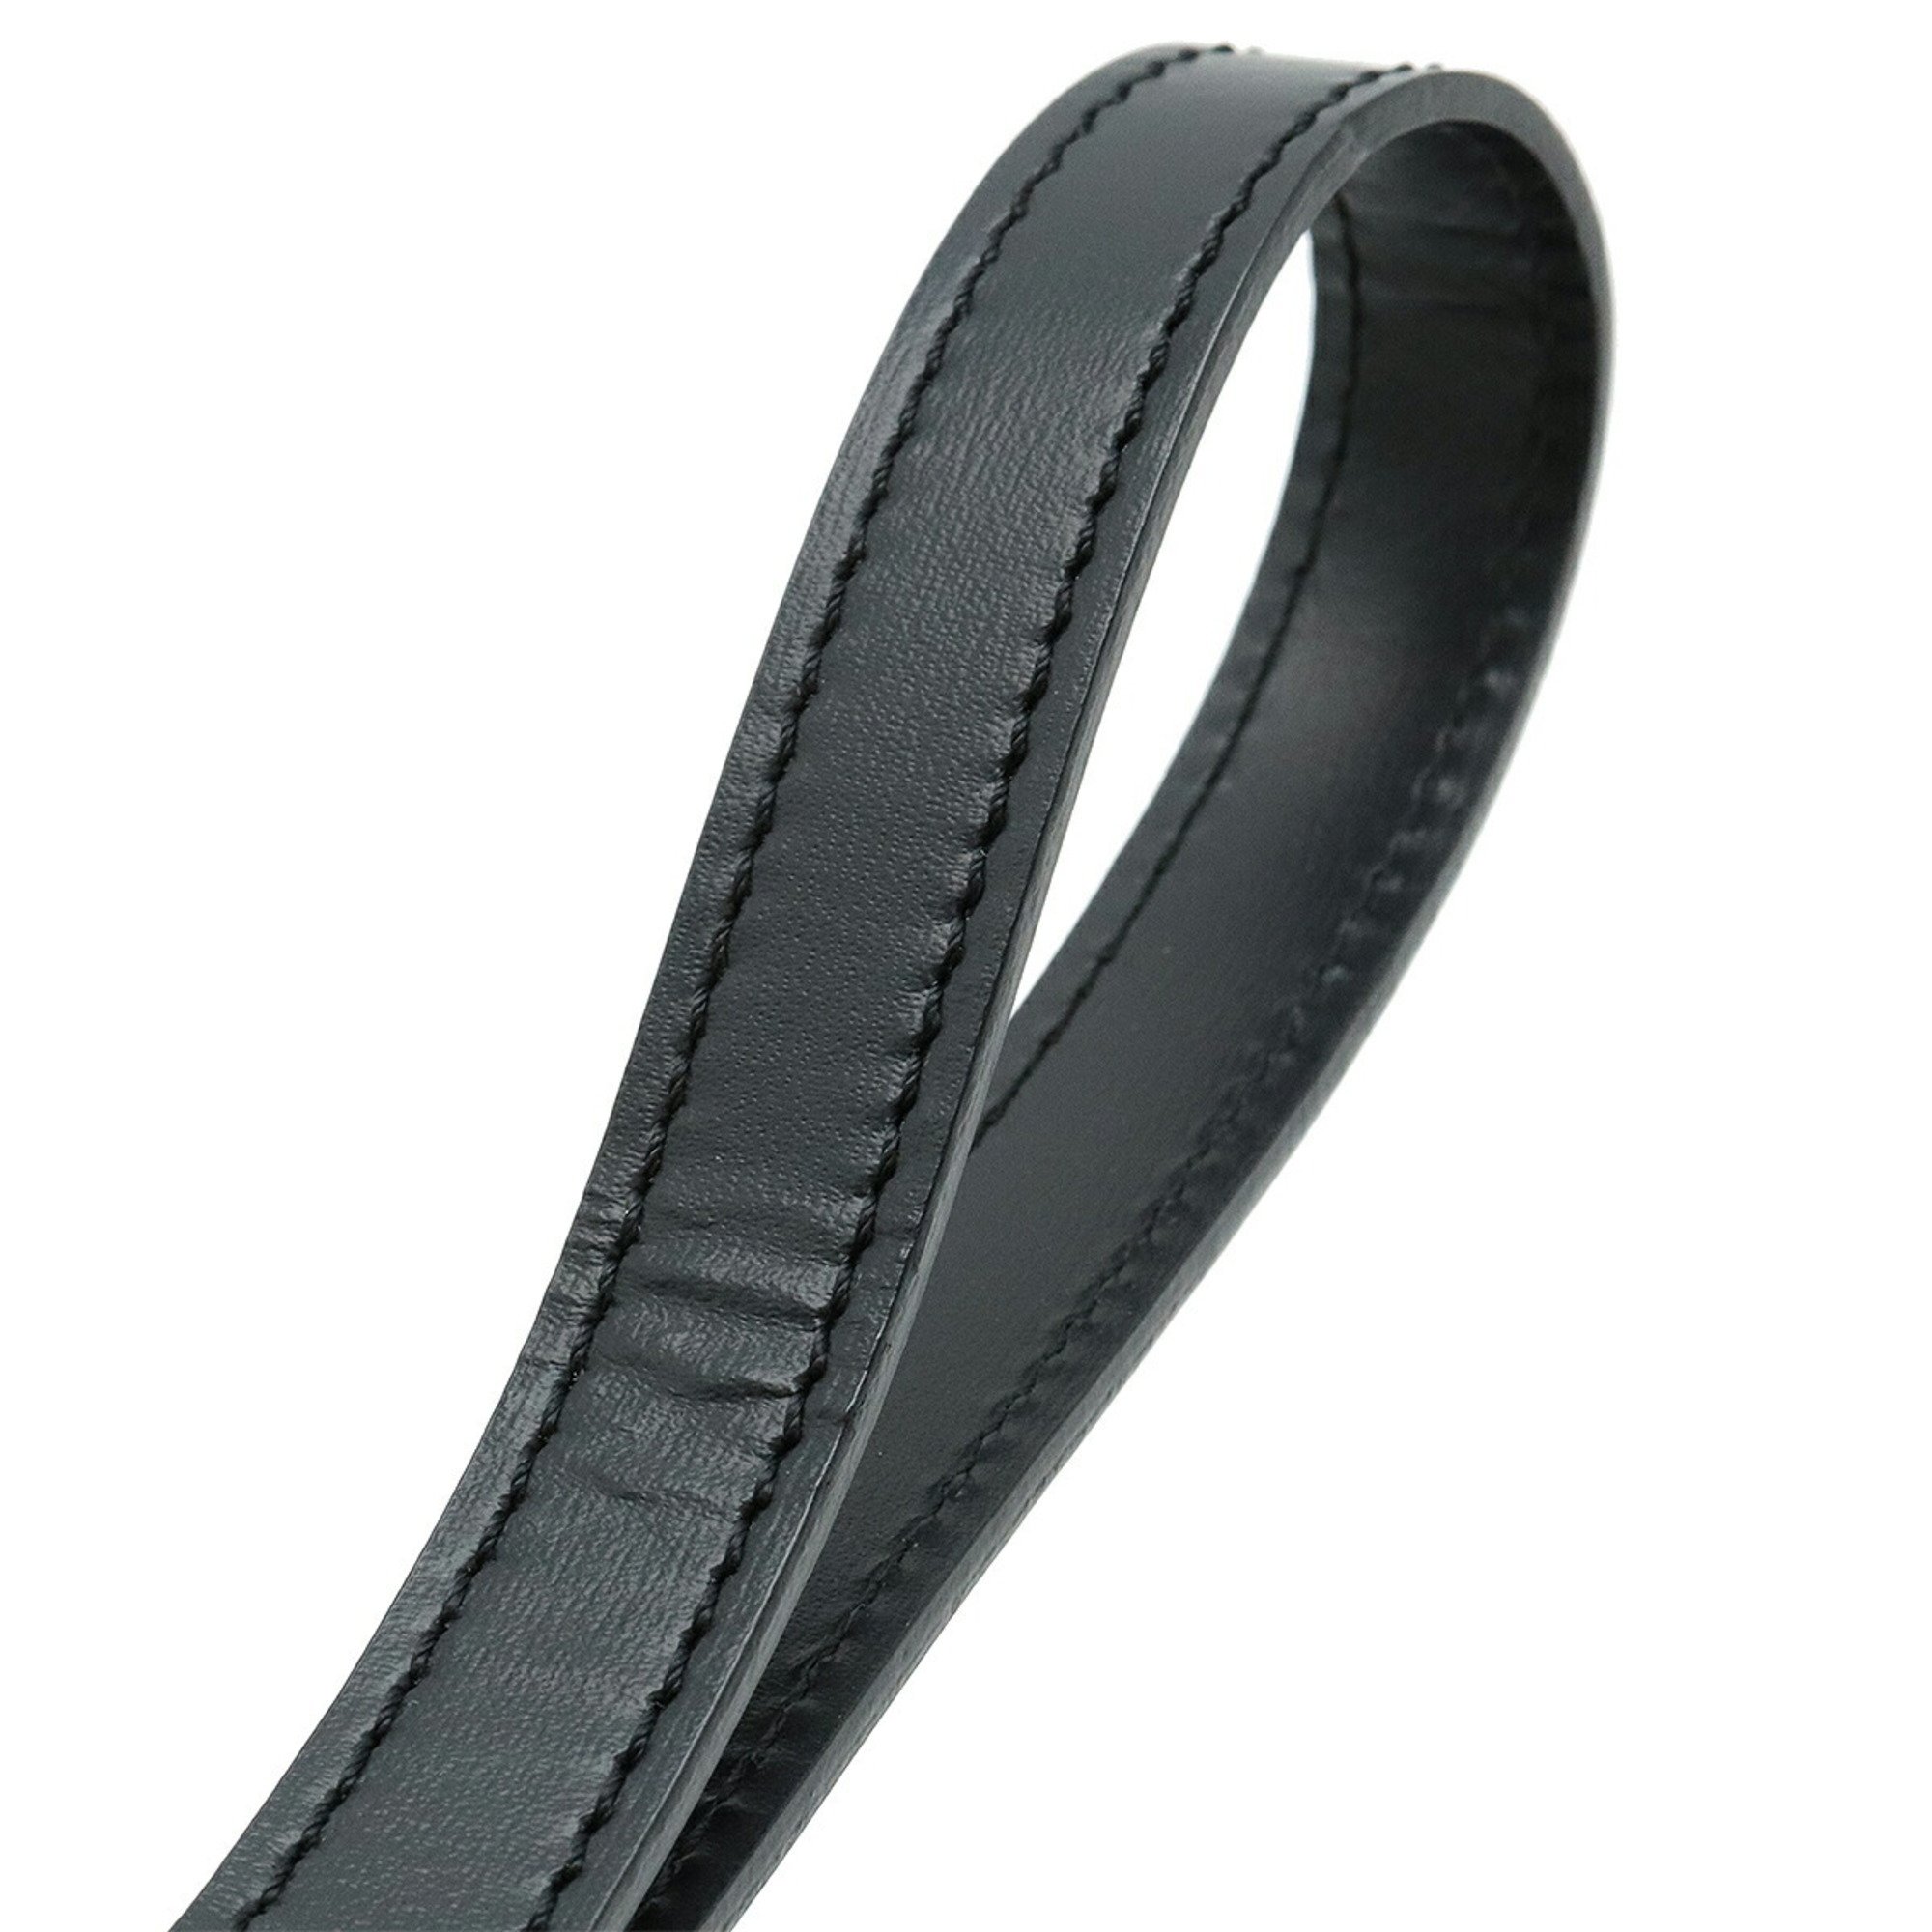 Cartier Pasha Line Second Bag Clutch Calf Leather Black L1000230